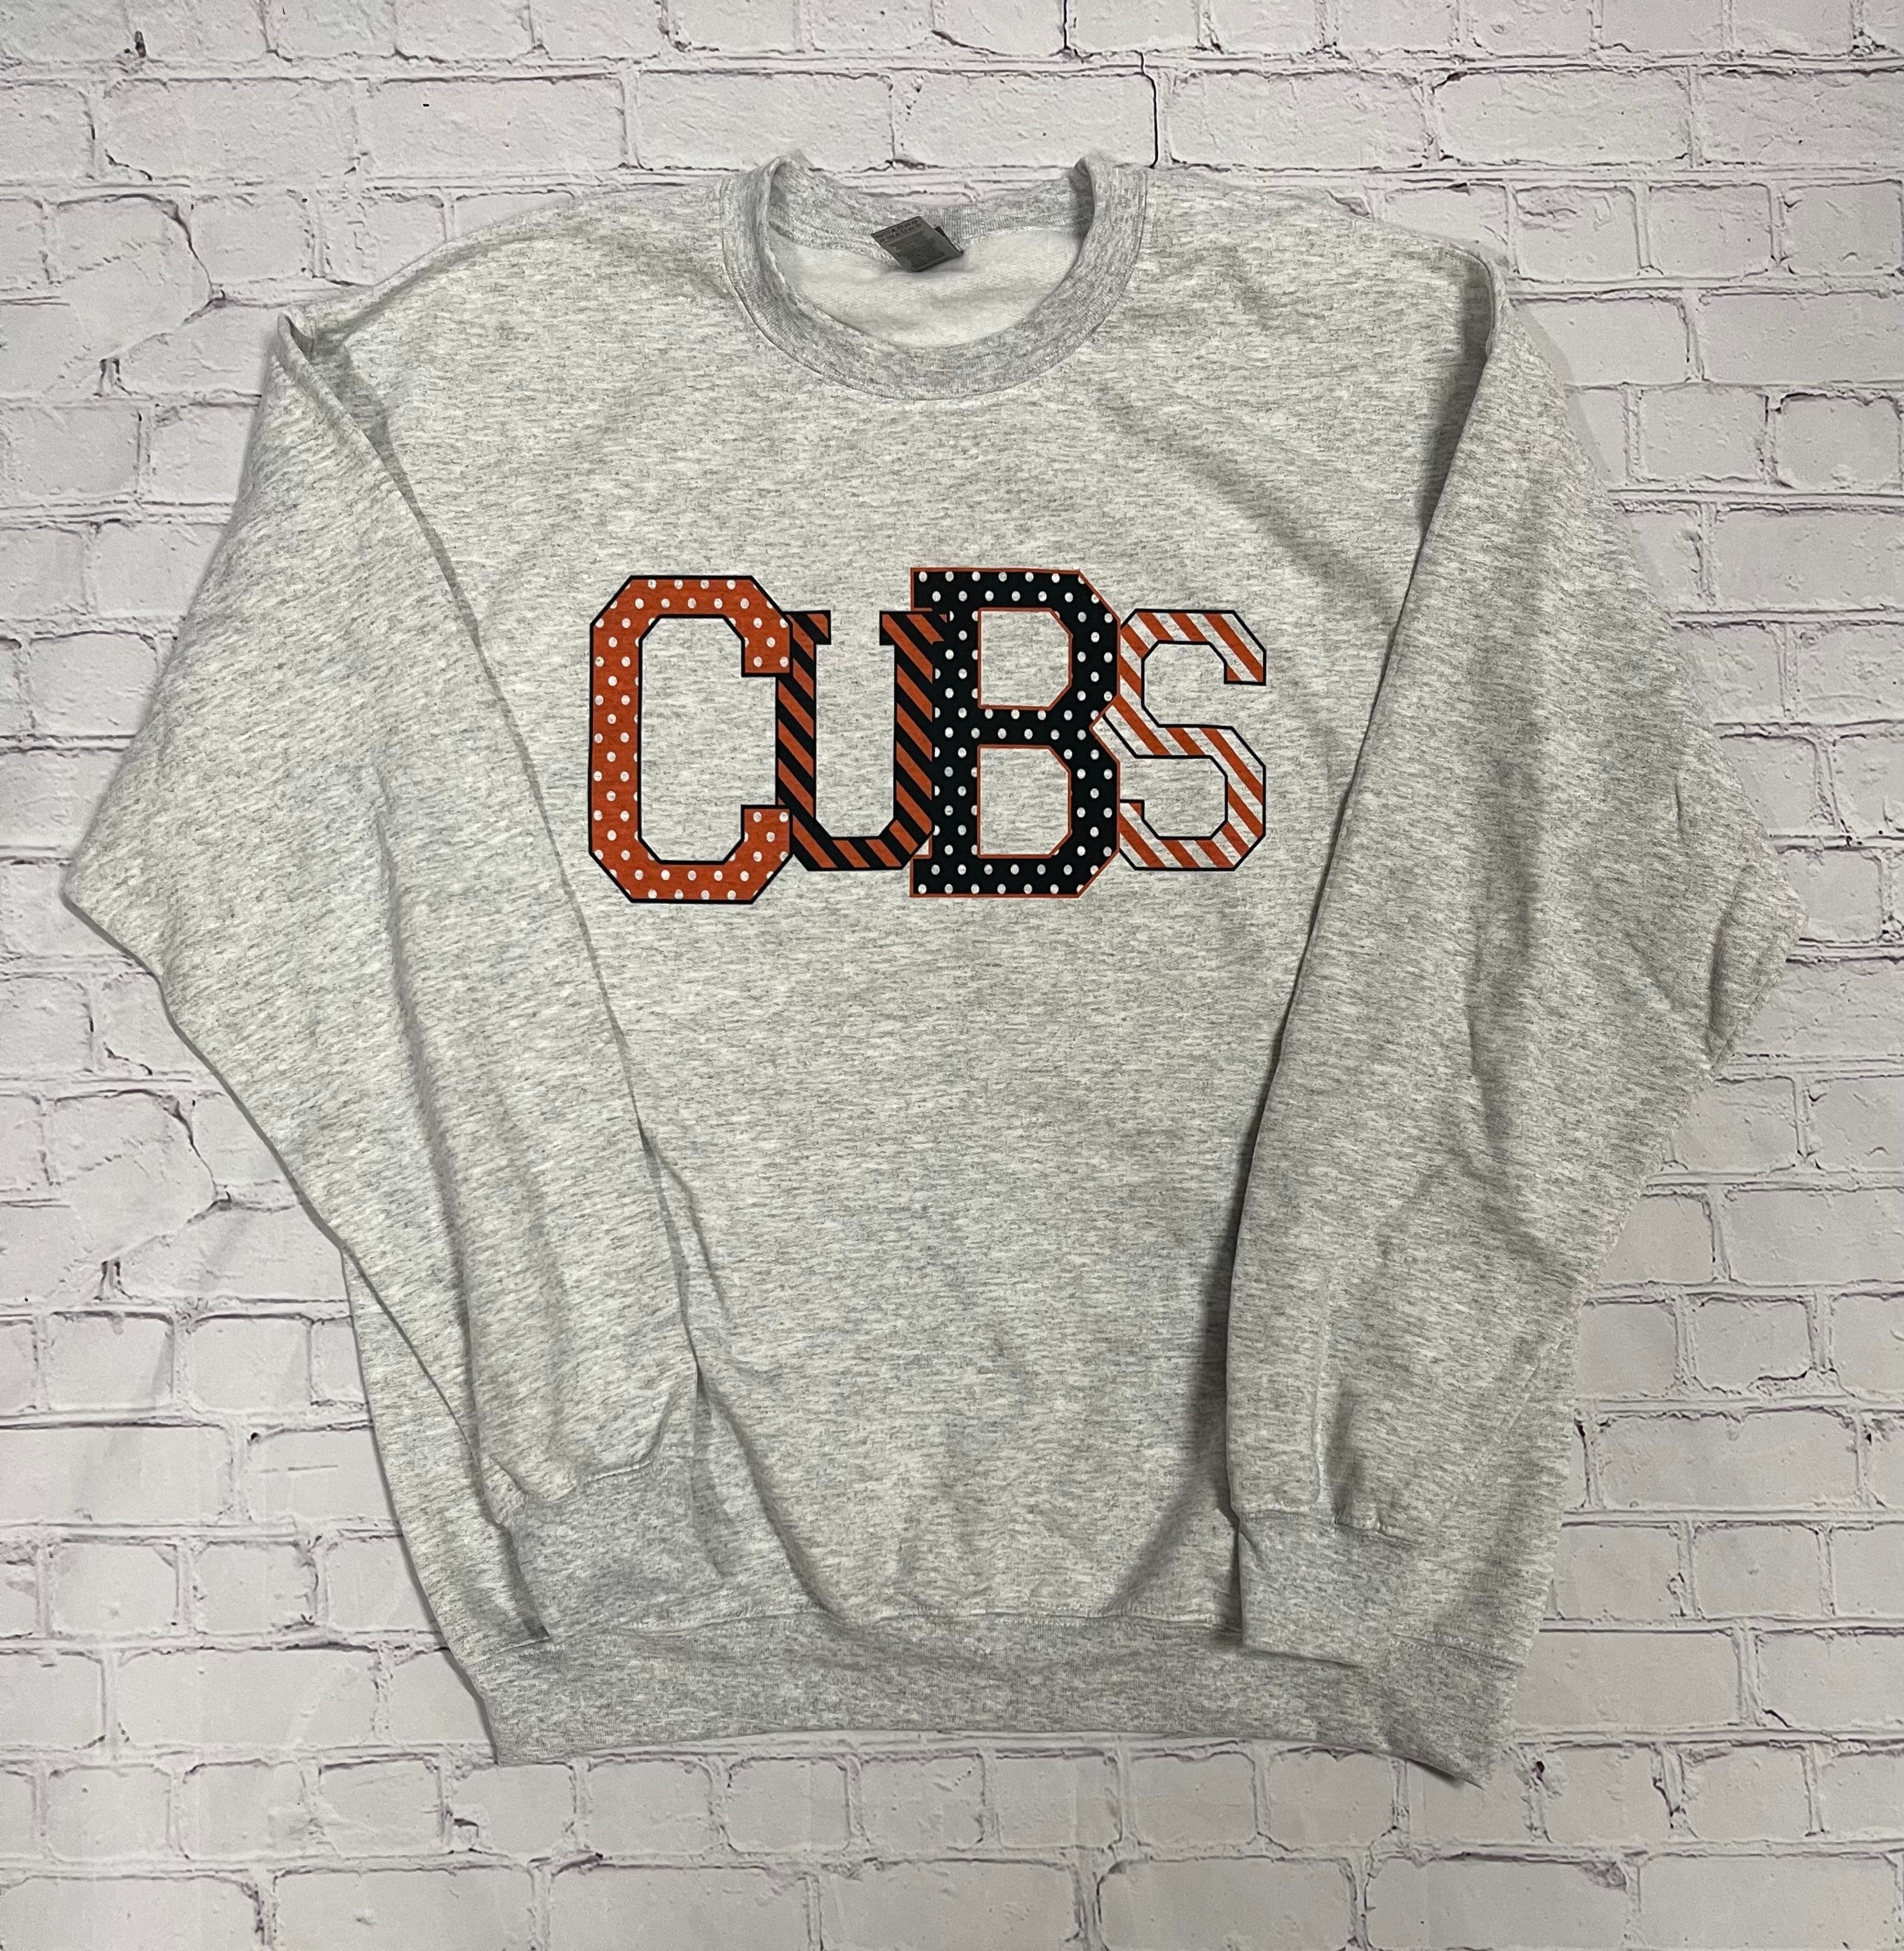 Cubs sweatshirt – Ellie Bell's T-Shirt Designs